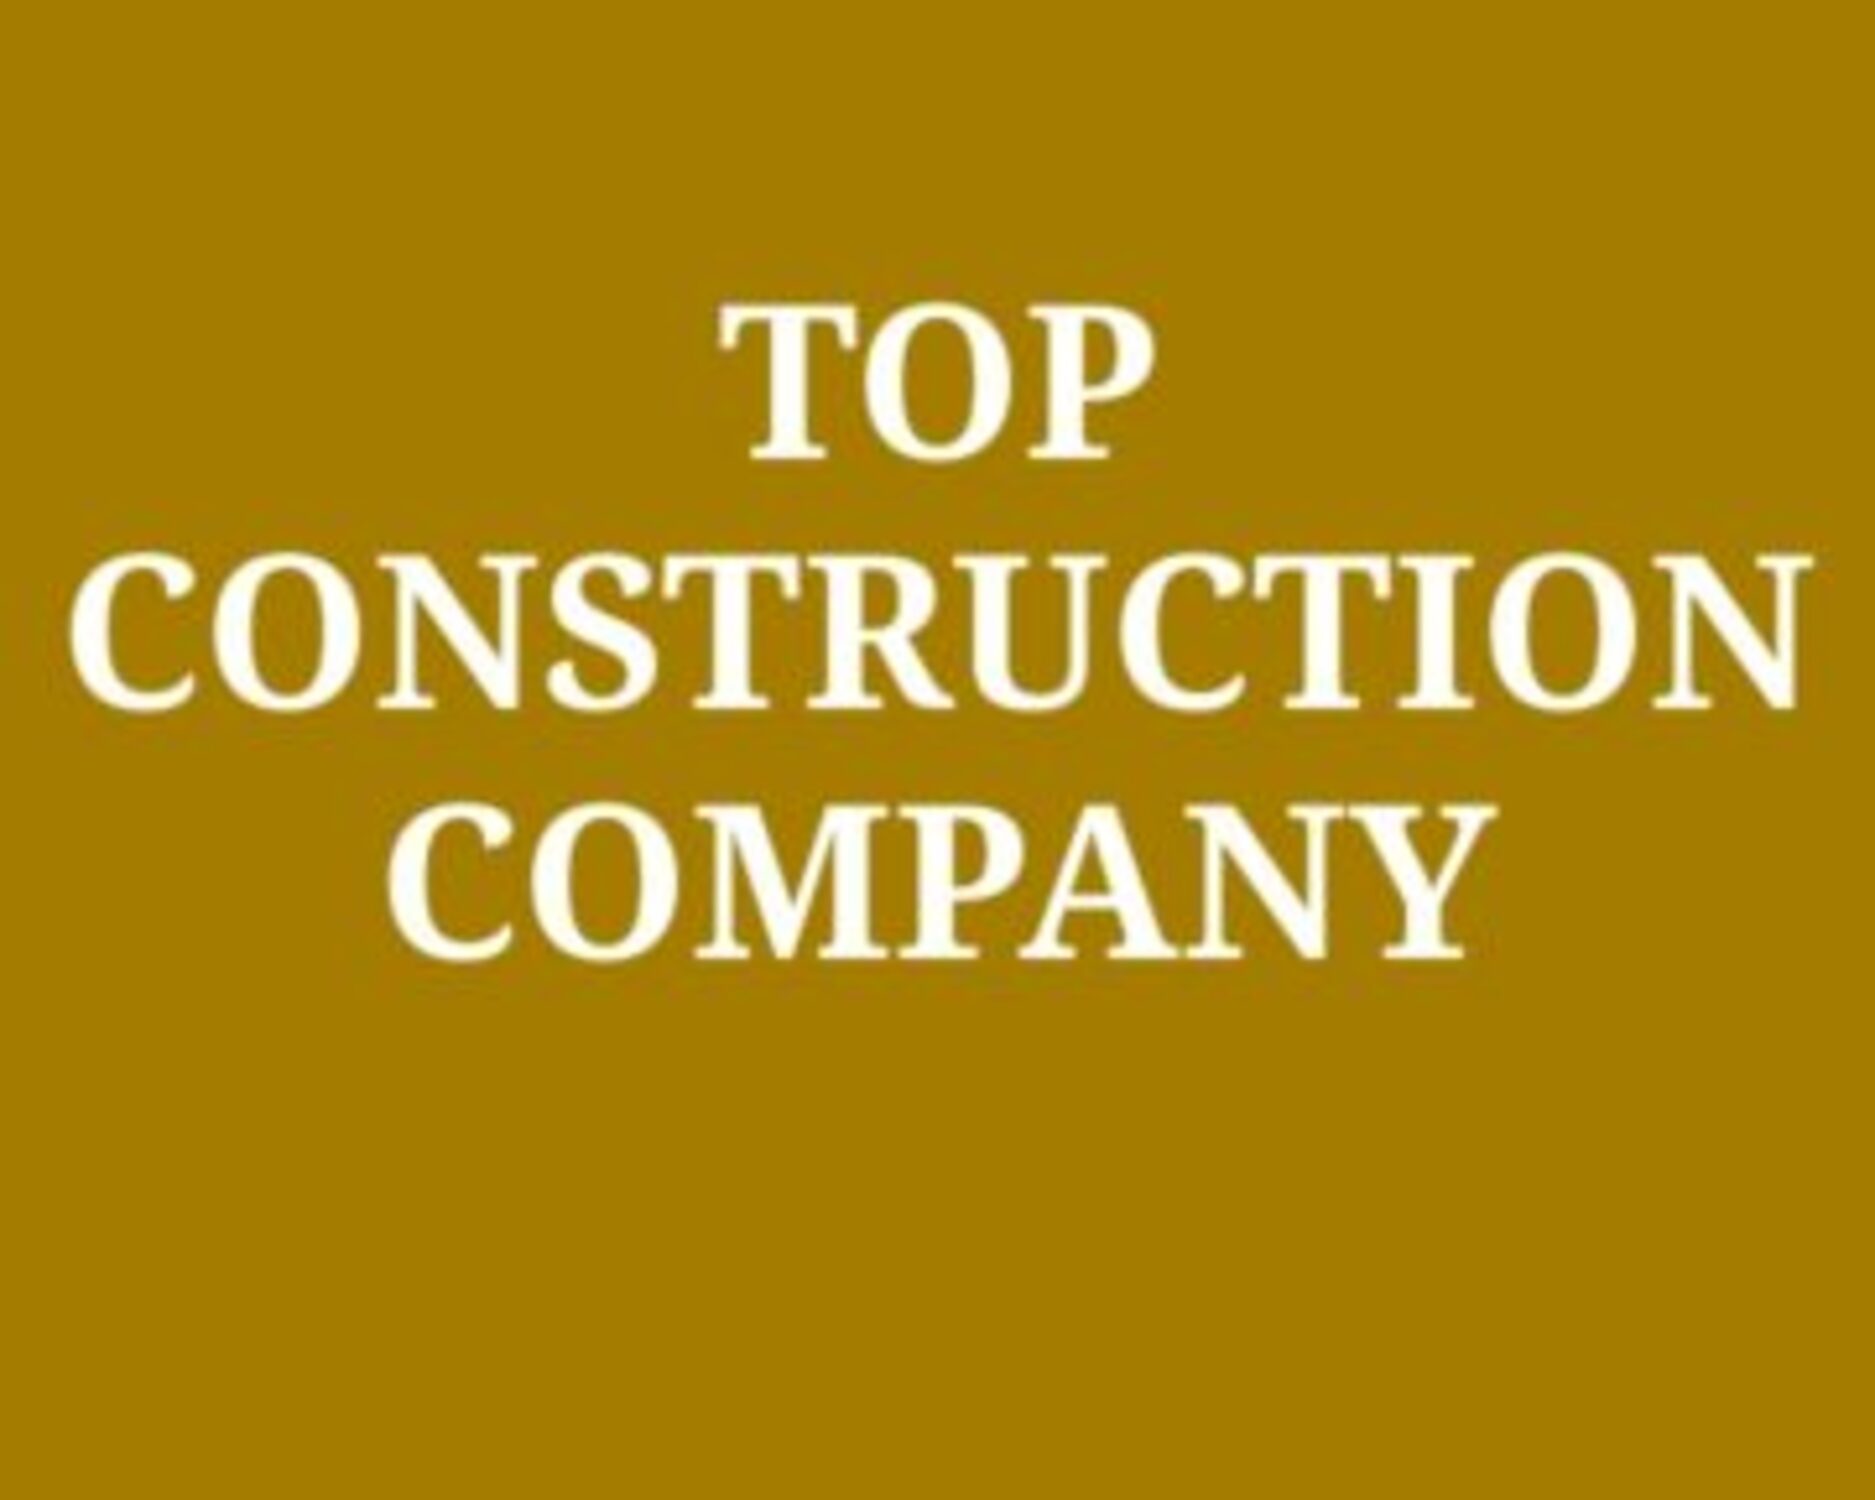 Company of construction